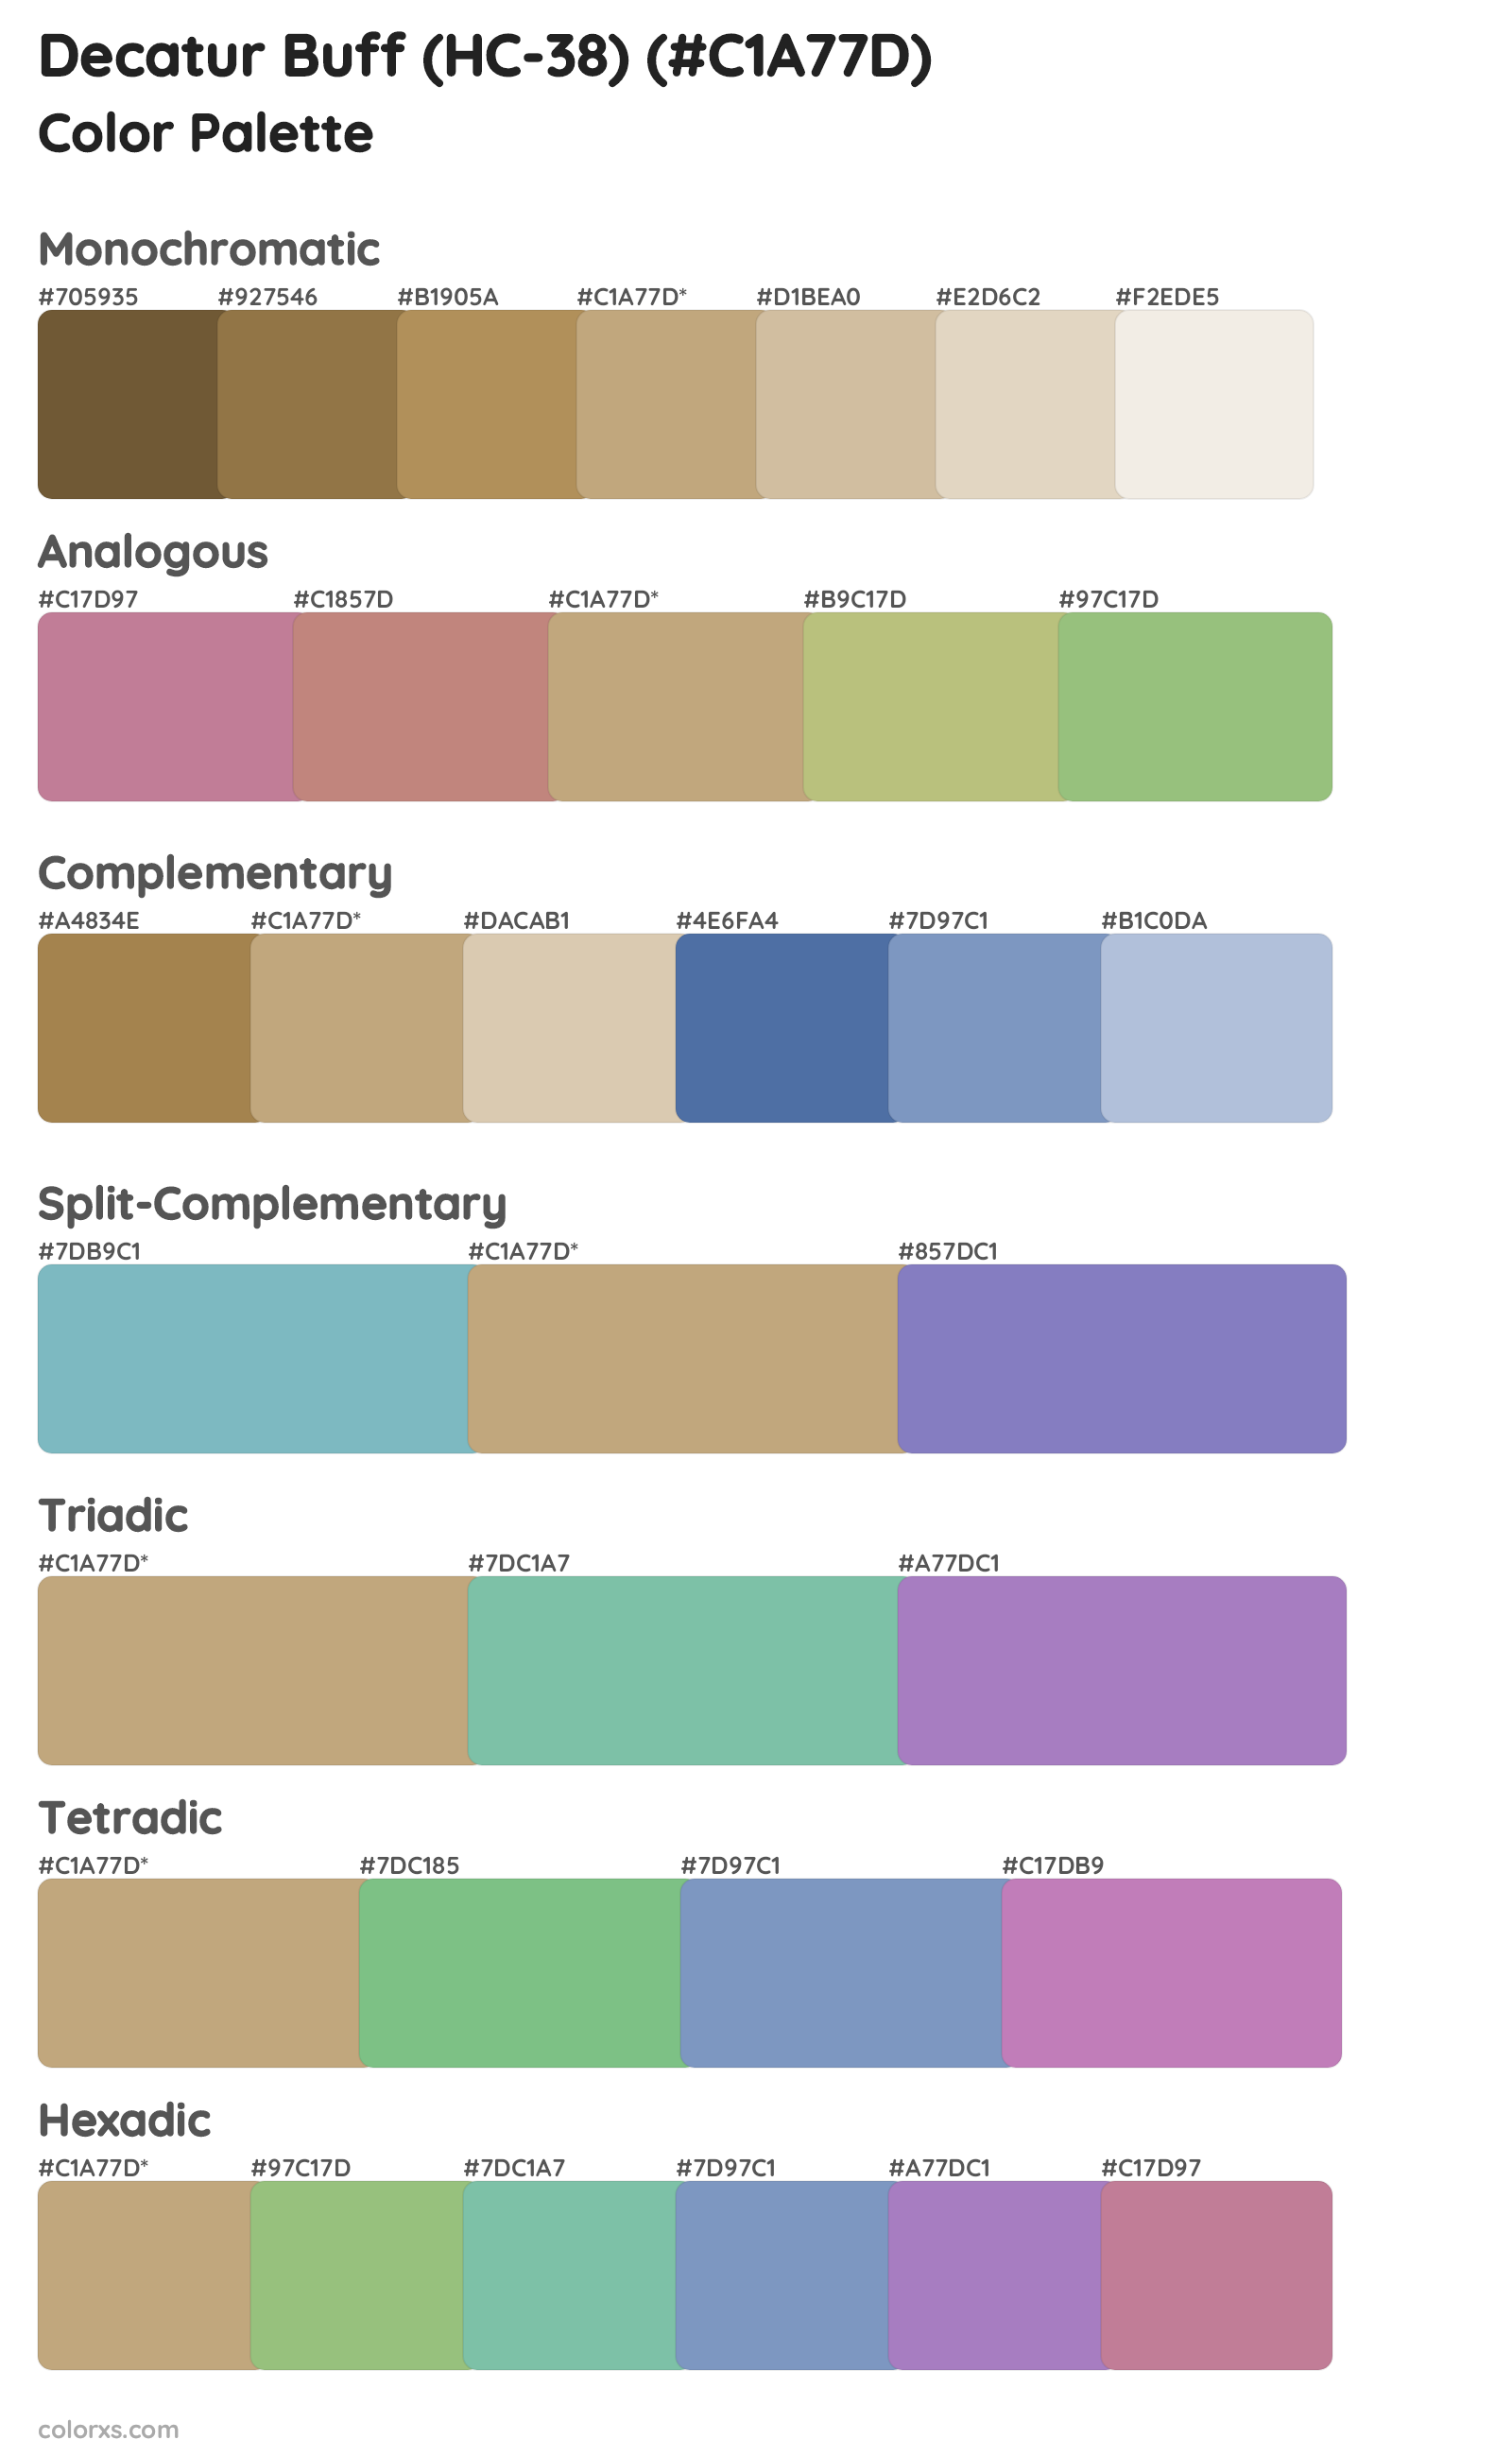 Decatur Buff (HC-38) Color Scheme Palettes